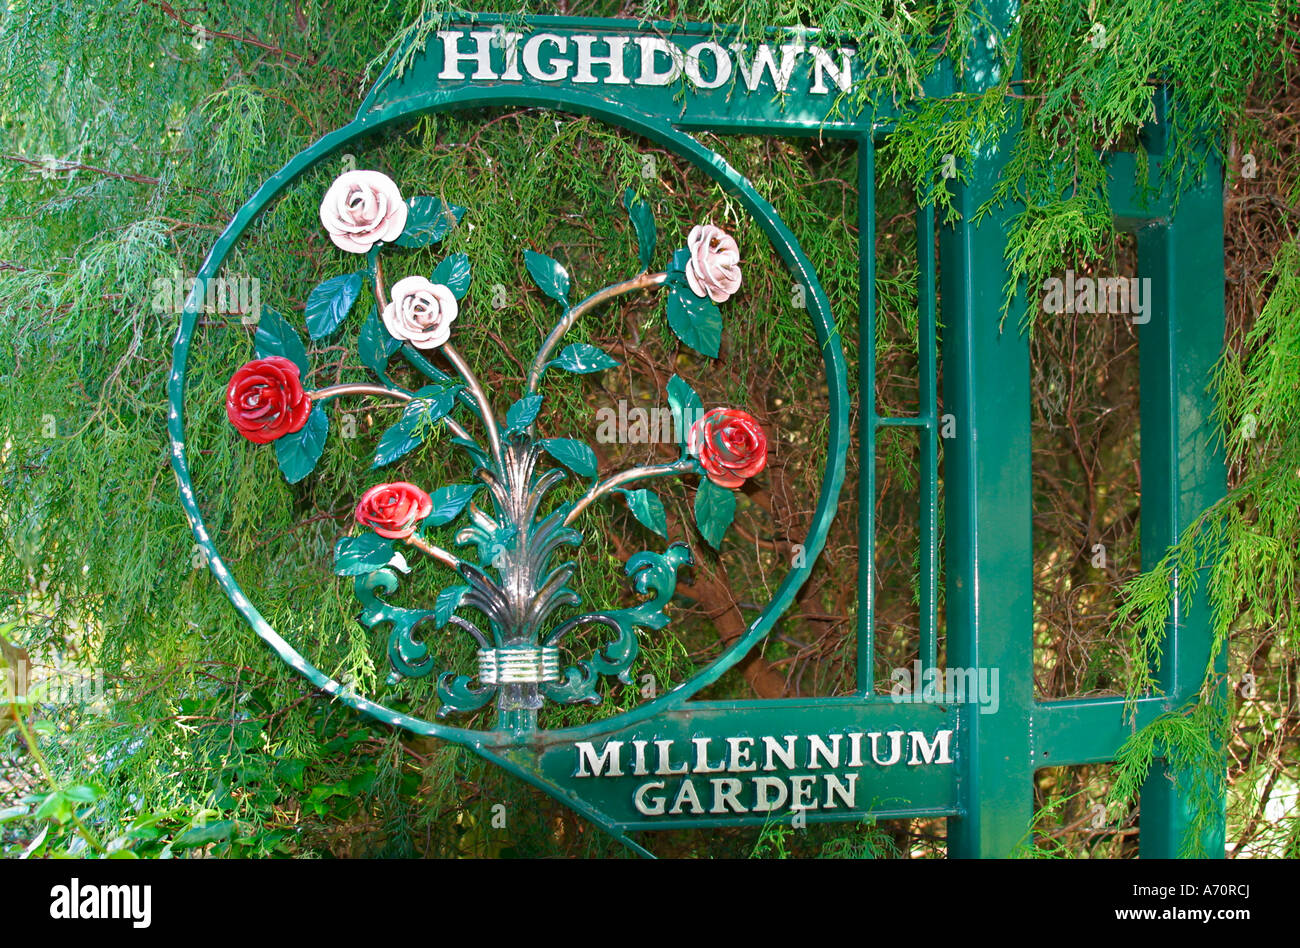 Decorative Millennium Garden Sign at Highdown Gardens, Worthing, Sussex Stock Photo